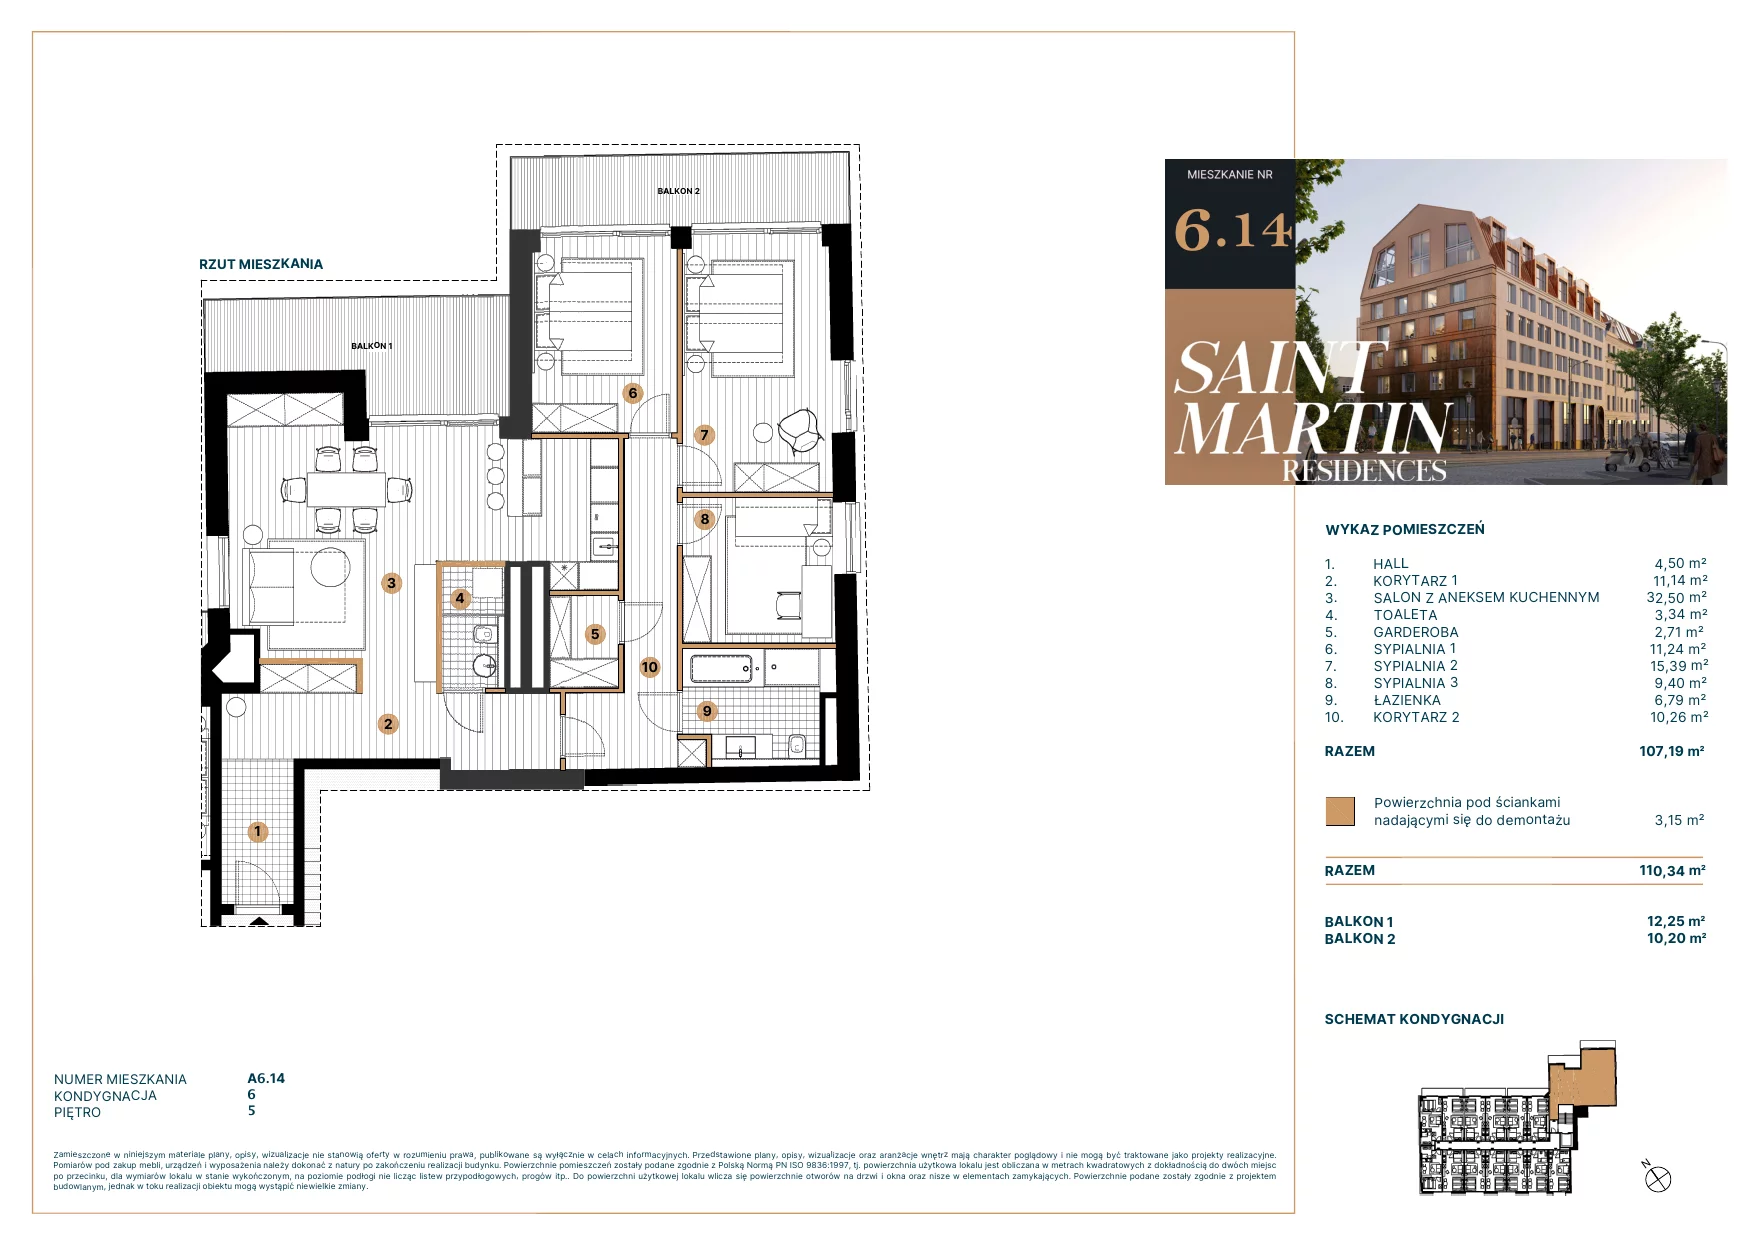 Mieszkanie 108,12 m², piętro 5, oferta nr A6.14, Saint Martin Residences II, Poznań, Stare Miasto, Stare Miasto, ul. Podgórna 7